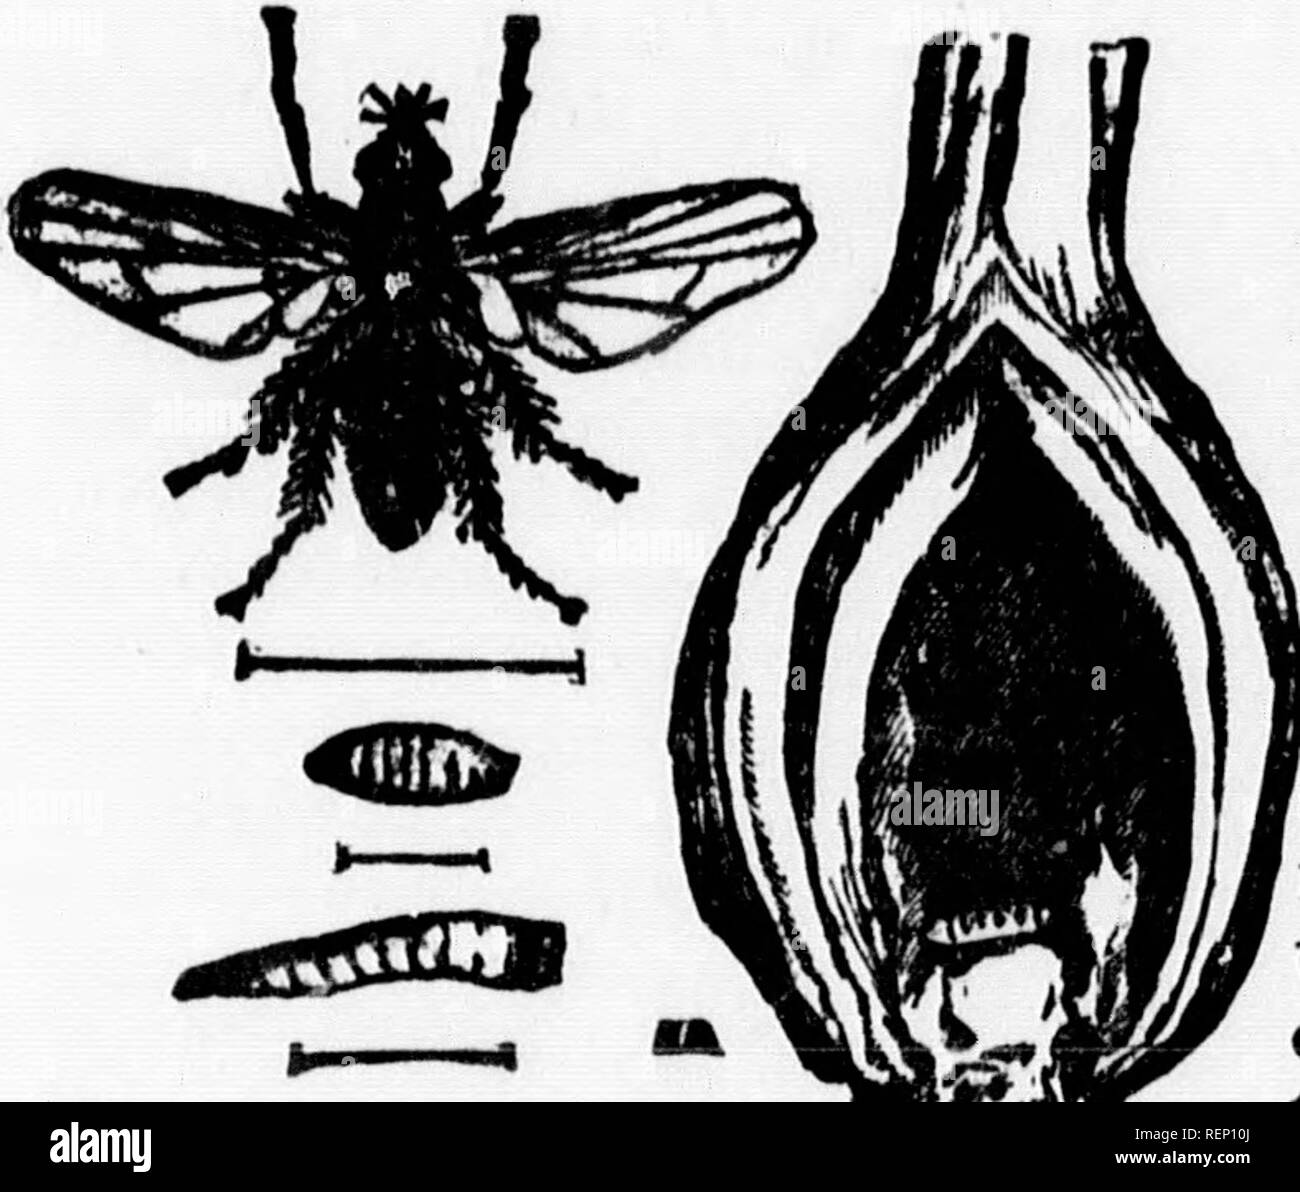 . Rapport de l'entomologiste (James Fletcher, M.S.R.C.) 1885 [microforme]. Insectes nuisibles; Insect pests. 87 IcÃ®dÃ©ment de la ) mouche en ap- ris et quelques nt sÃ©rieusement ,r de la mouche ;b de poussiÃ¨re, I cause. Je me uieirent un bon om de Smynthur â dins en mai et choux, cresson u {Pieris rapÅ) is toutes les par- dorant (migno- ianthrts annuus) lonnaÃ®tre le nom ouche Straussia ver un eoul pied e paraÃ®t pas que ieds de haut et creusÃ©e depuis une luxuriance Ã¢es. HER, Â« Vagriculture.. APPENDICE 1. LE YER DE L'OlGNOK-ÃPhorbia ceparum, Meigen). LBTTOiÃ® ATT JOURNAL LB Â« CITIZEN, &q Stock Photo